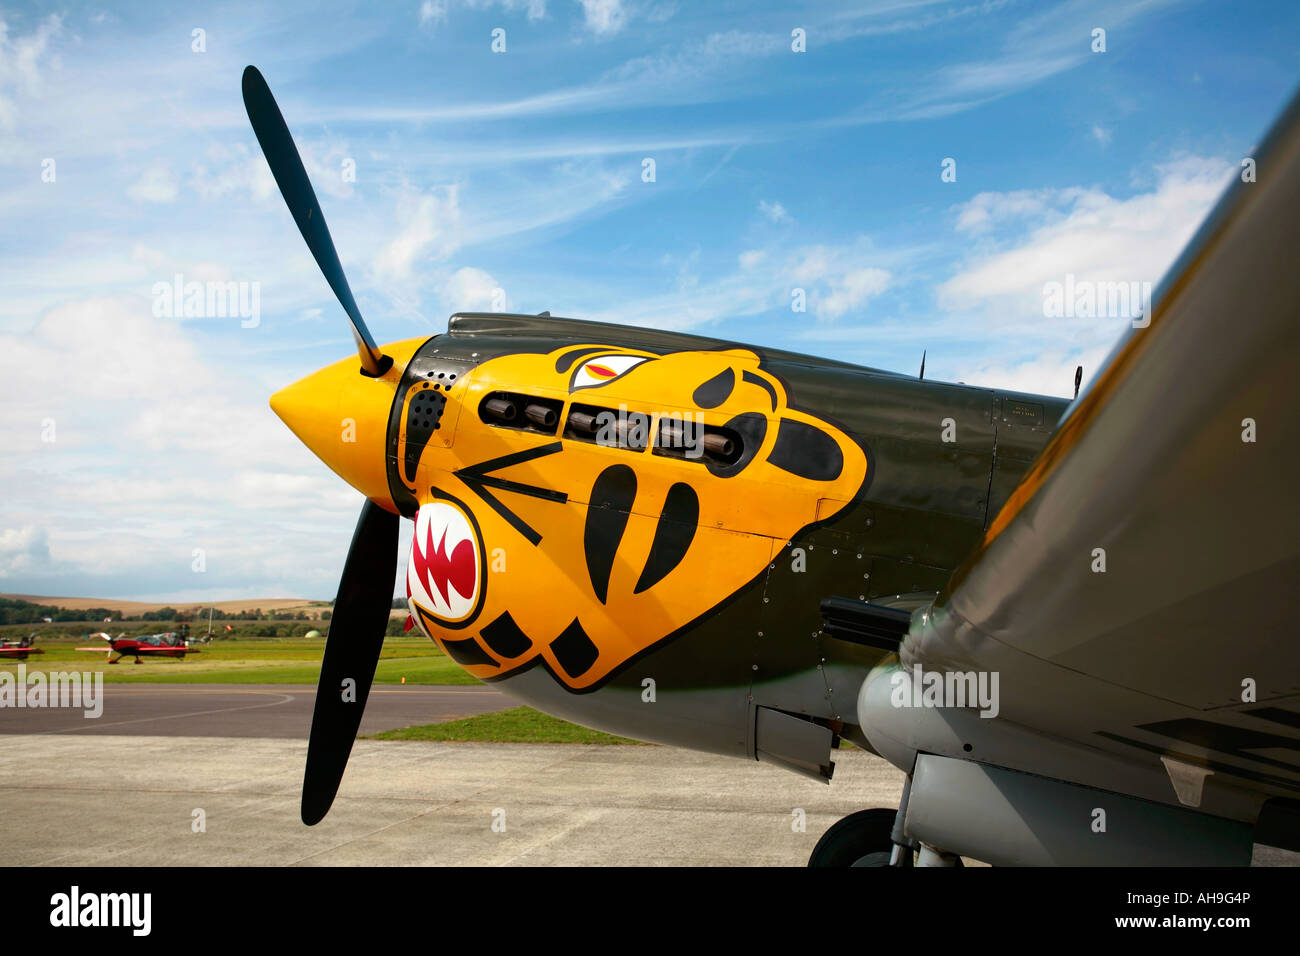 Curtiss P40 Kittyhawk exposé statique à l'aéroport de Shoreham, Sussex Banque D'Images